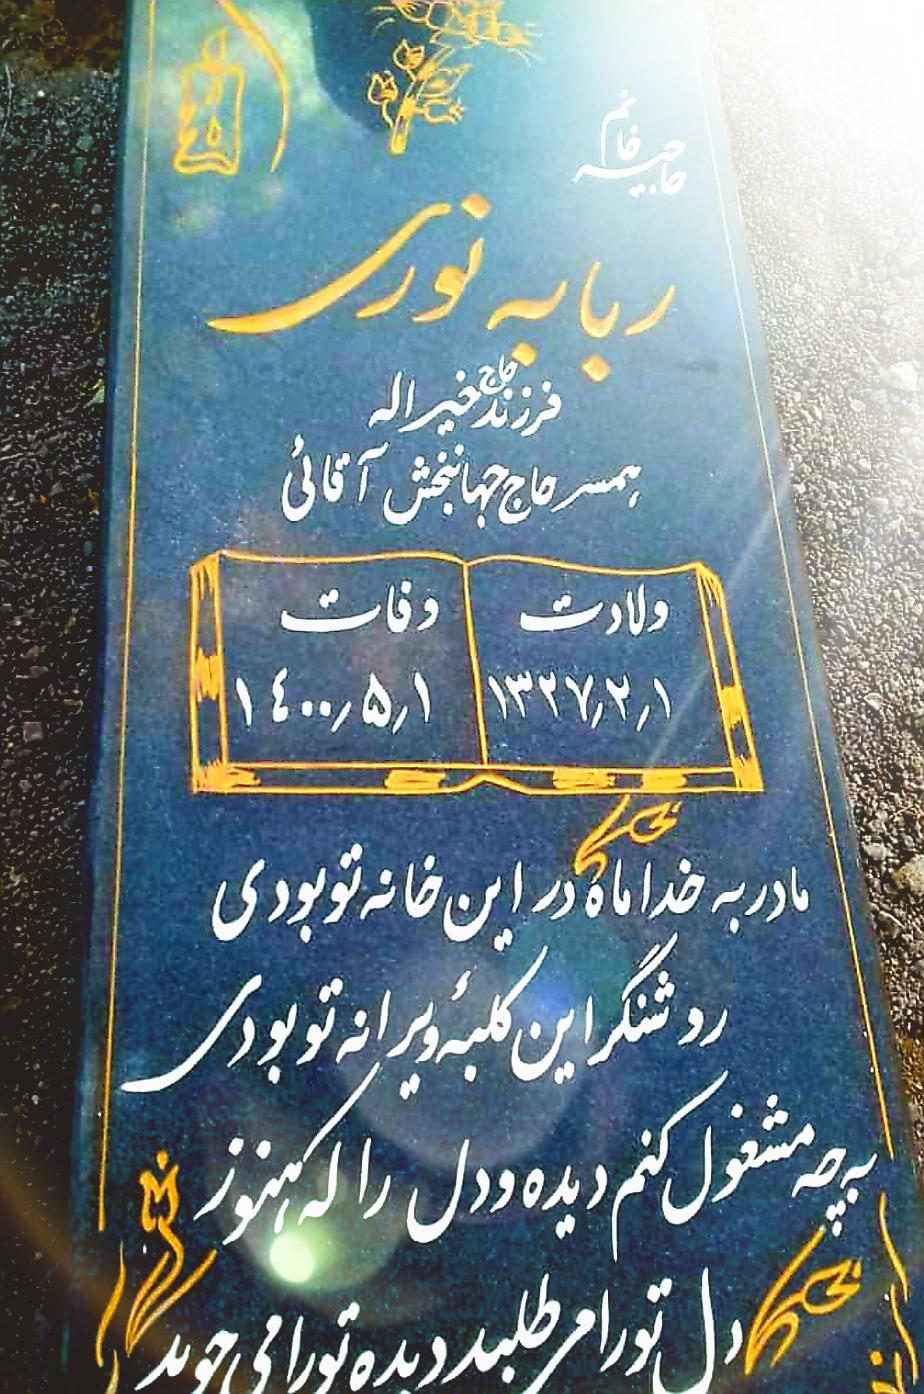 یادبود شادروان حاجیه خانم ربابه نوری